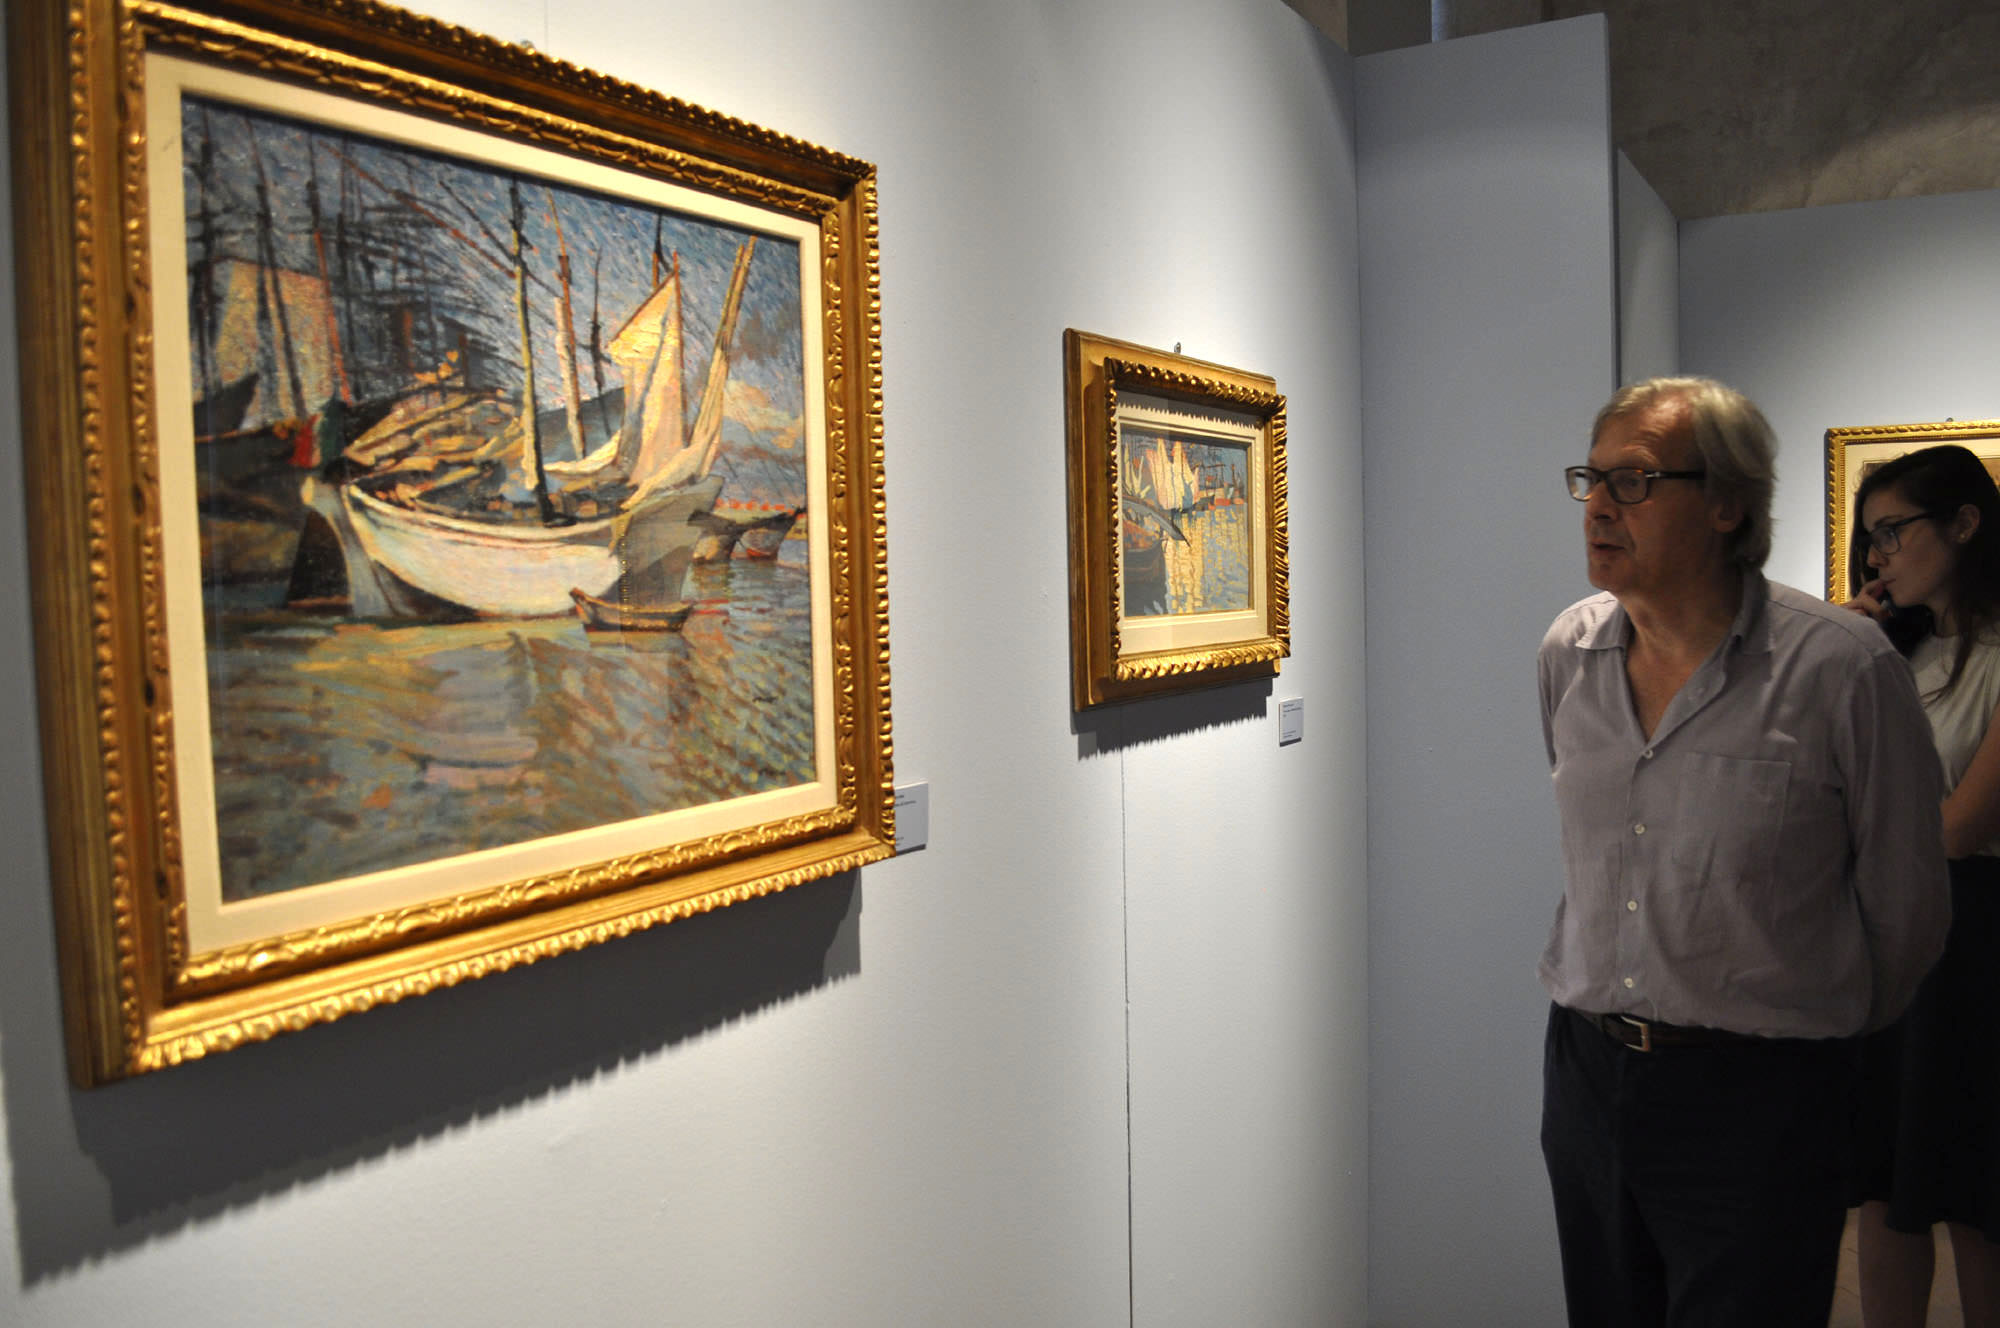 Ultimi giorni per ammirare l’arte di Mario Puccini, il “Van Gogh” italiano